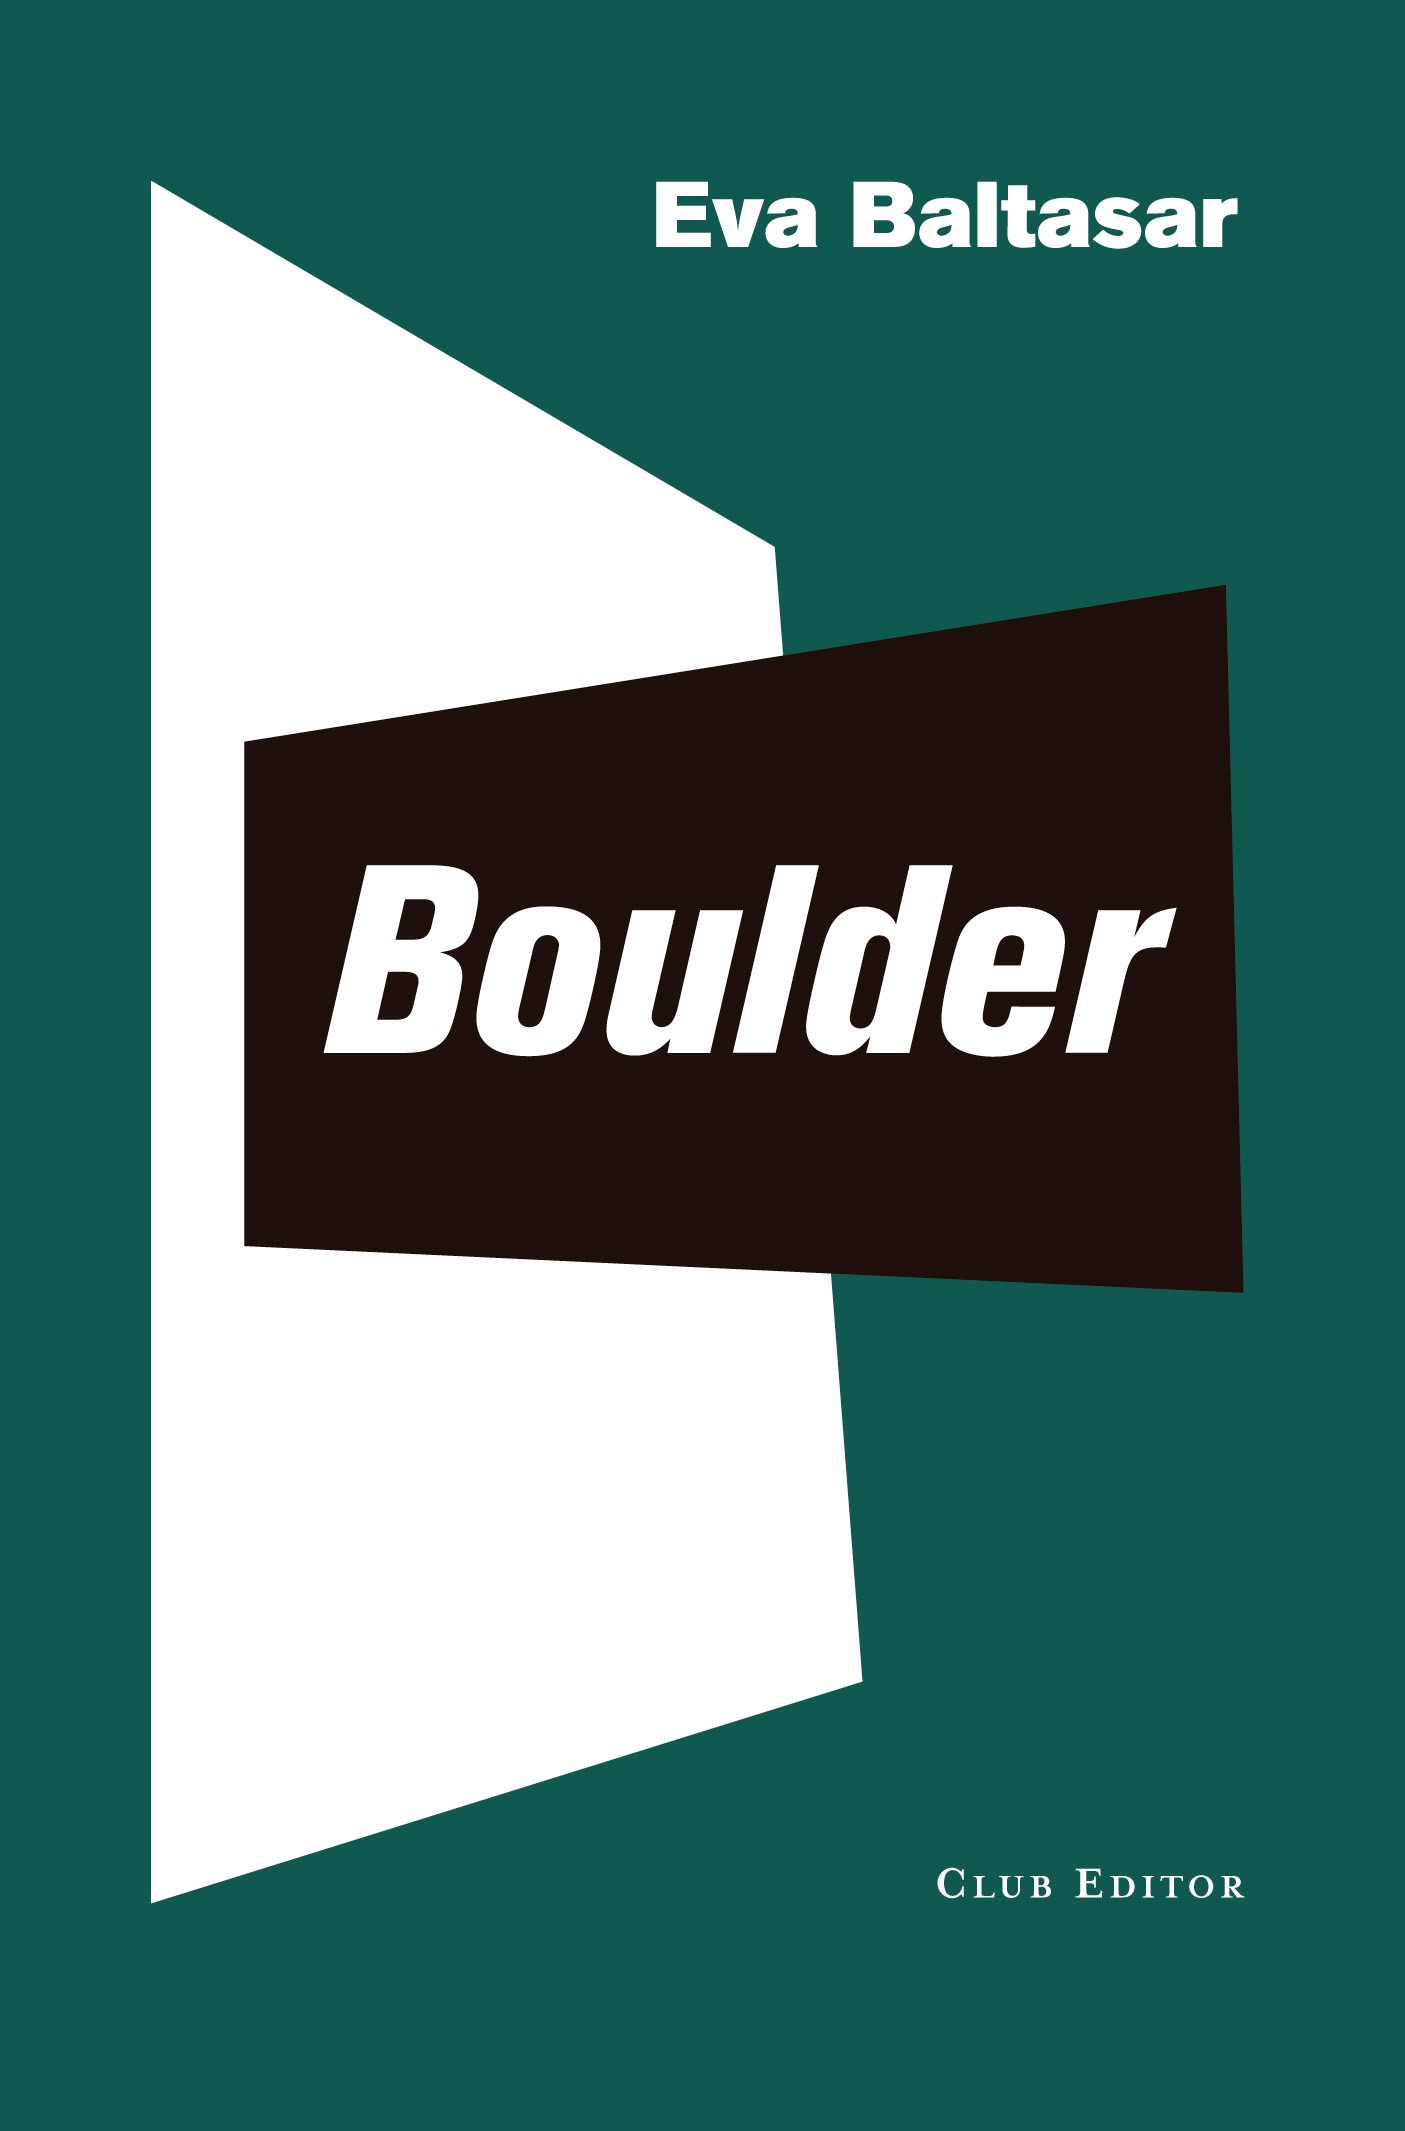 Boulder — Club Editor